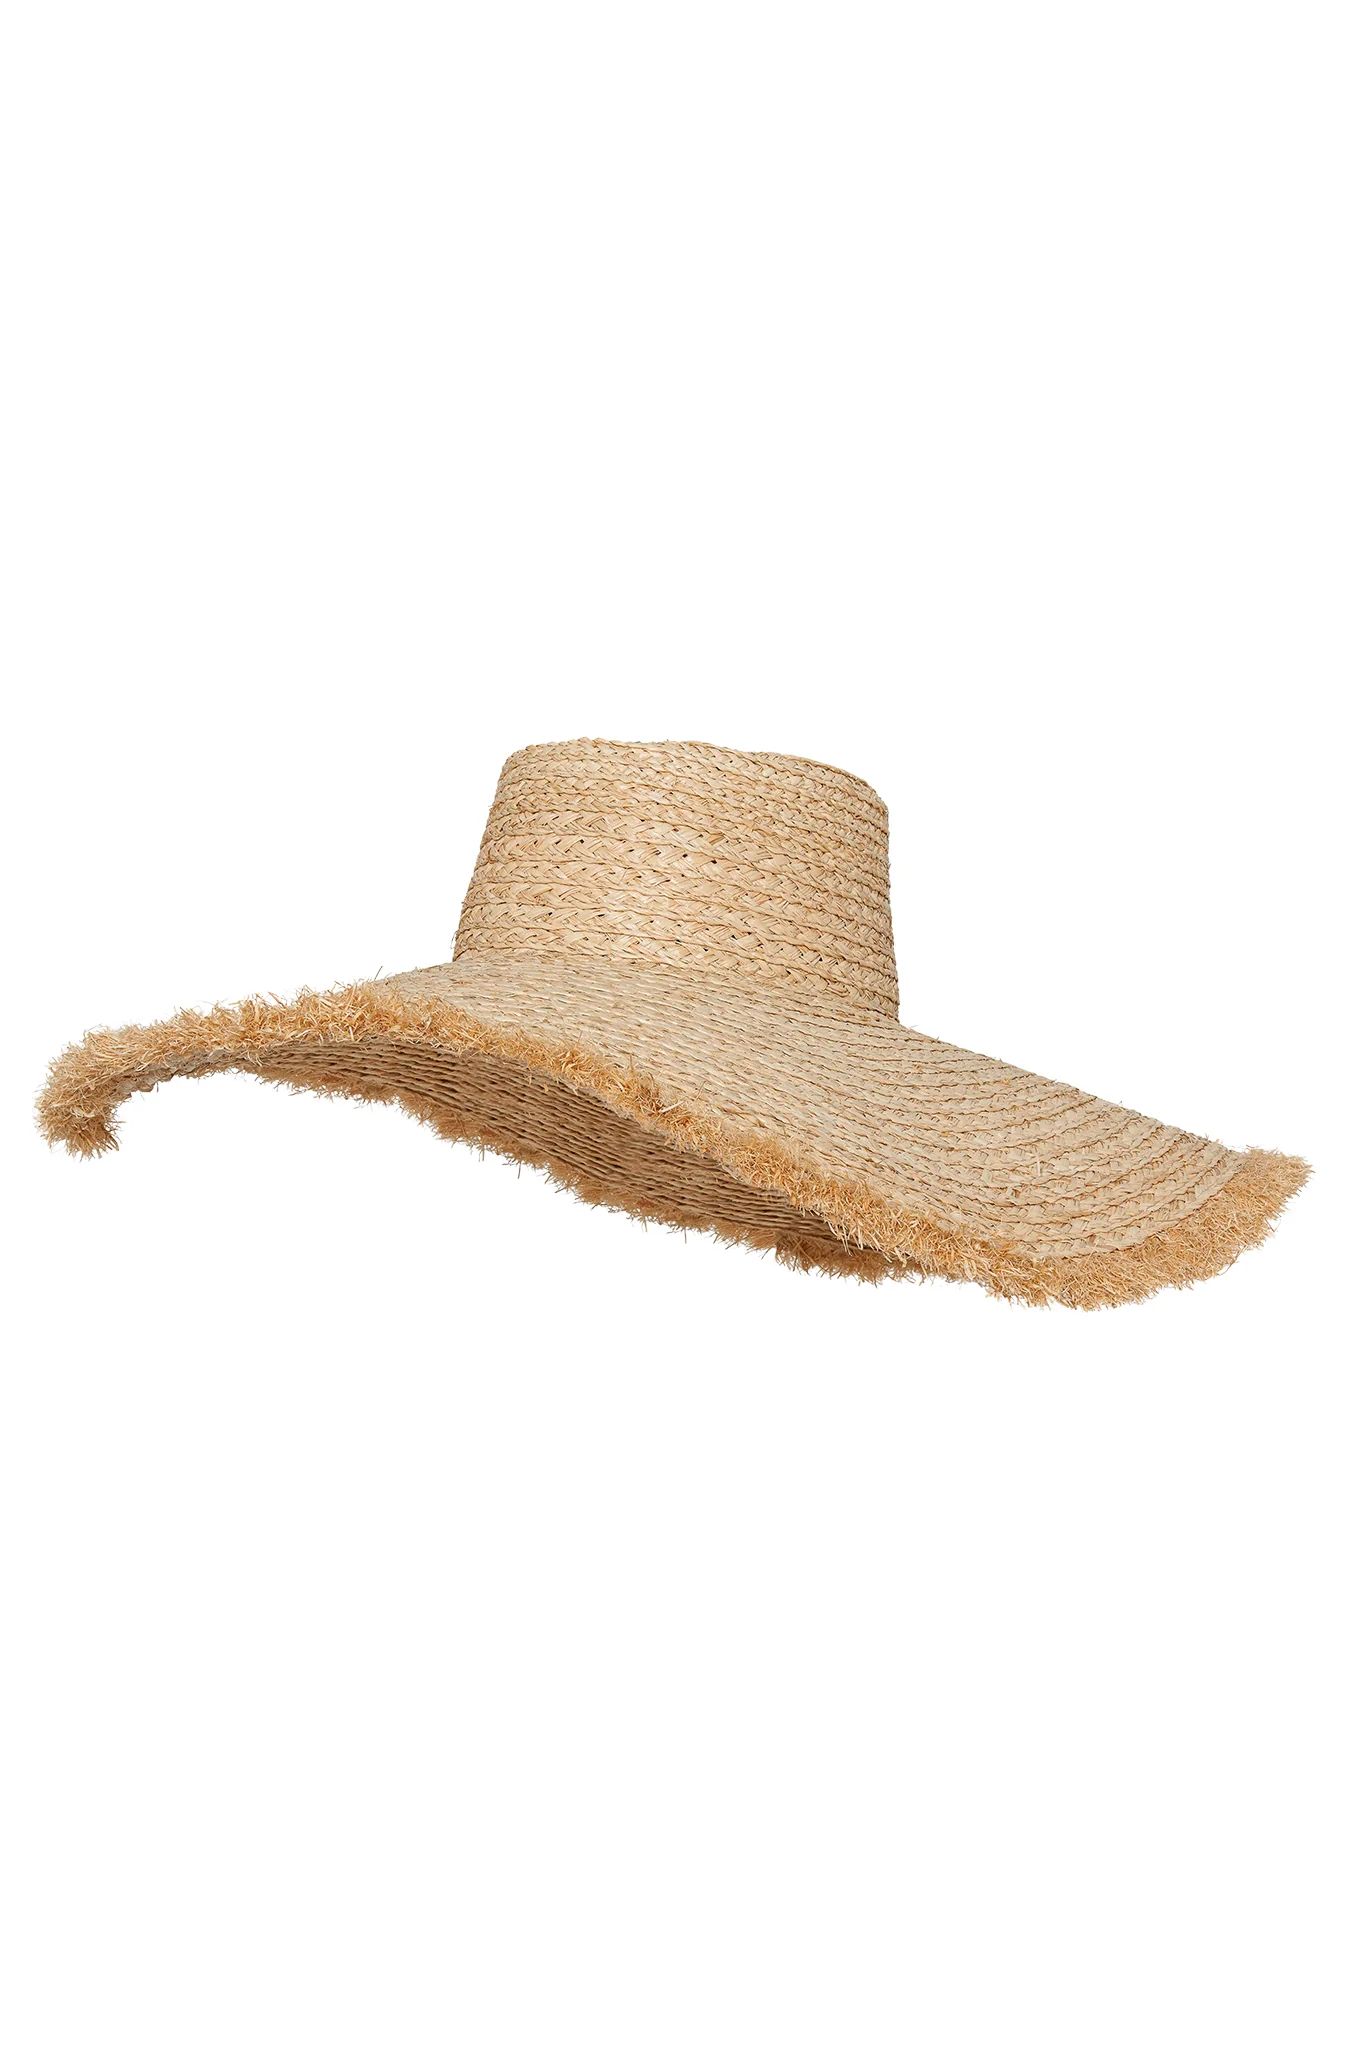 Bondi Hat - Wide Brim | Monday Swimwear